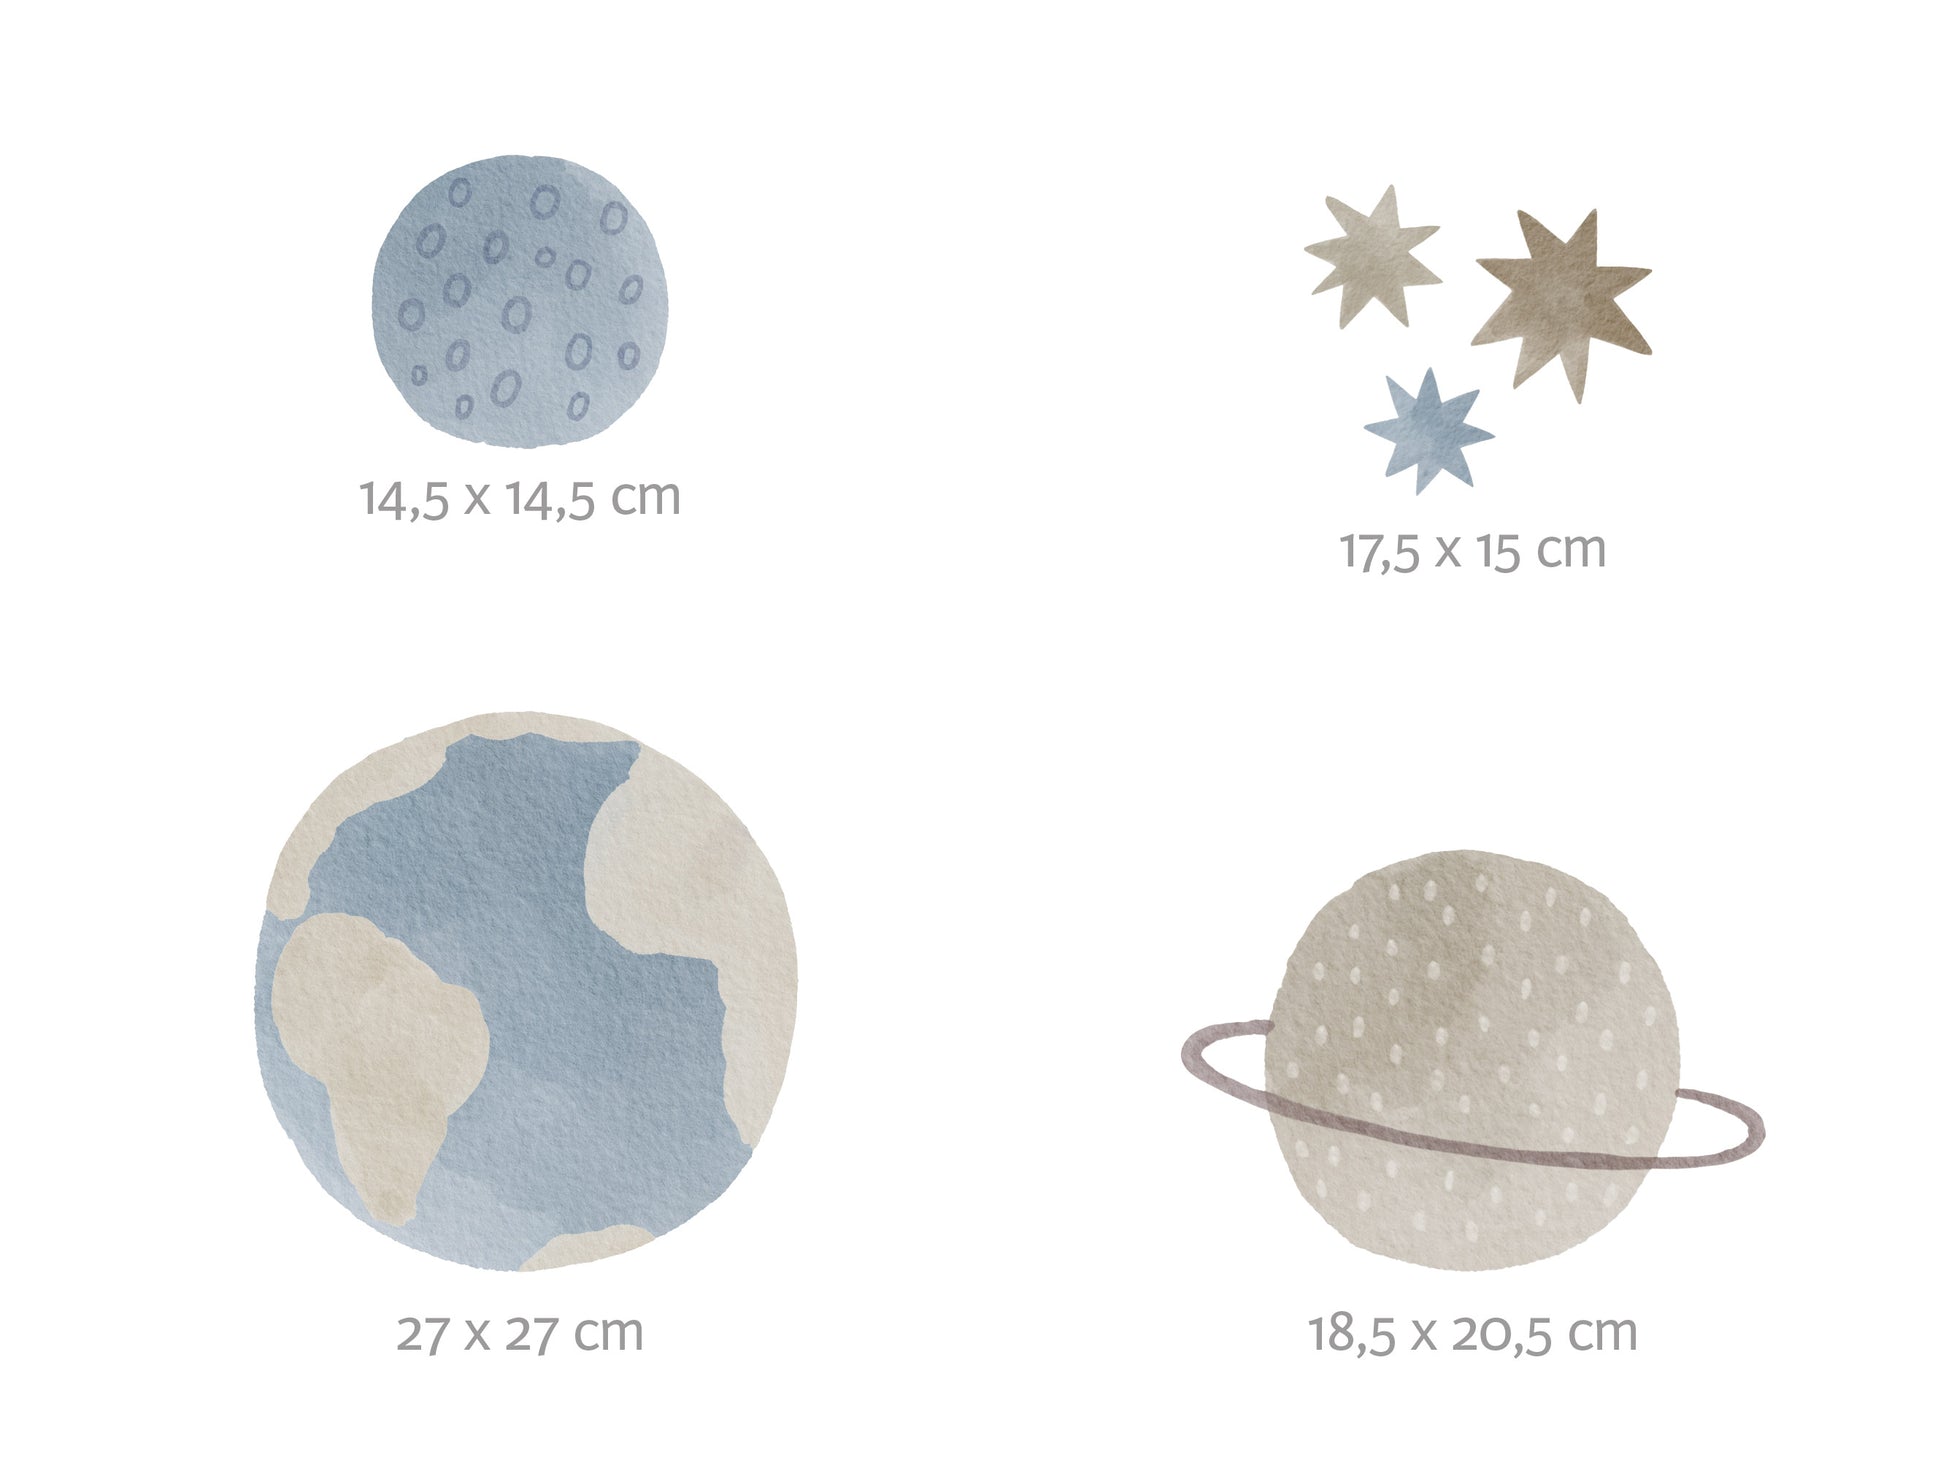 Walls Planeten (Wandsticker/Wandtattoo) und Rakete, Sterne – Weltraum: Mural